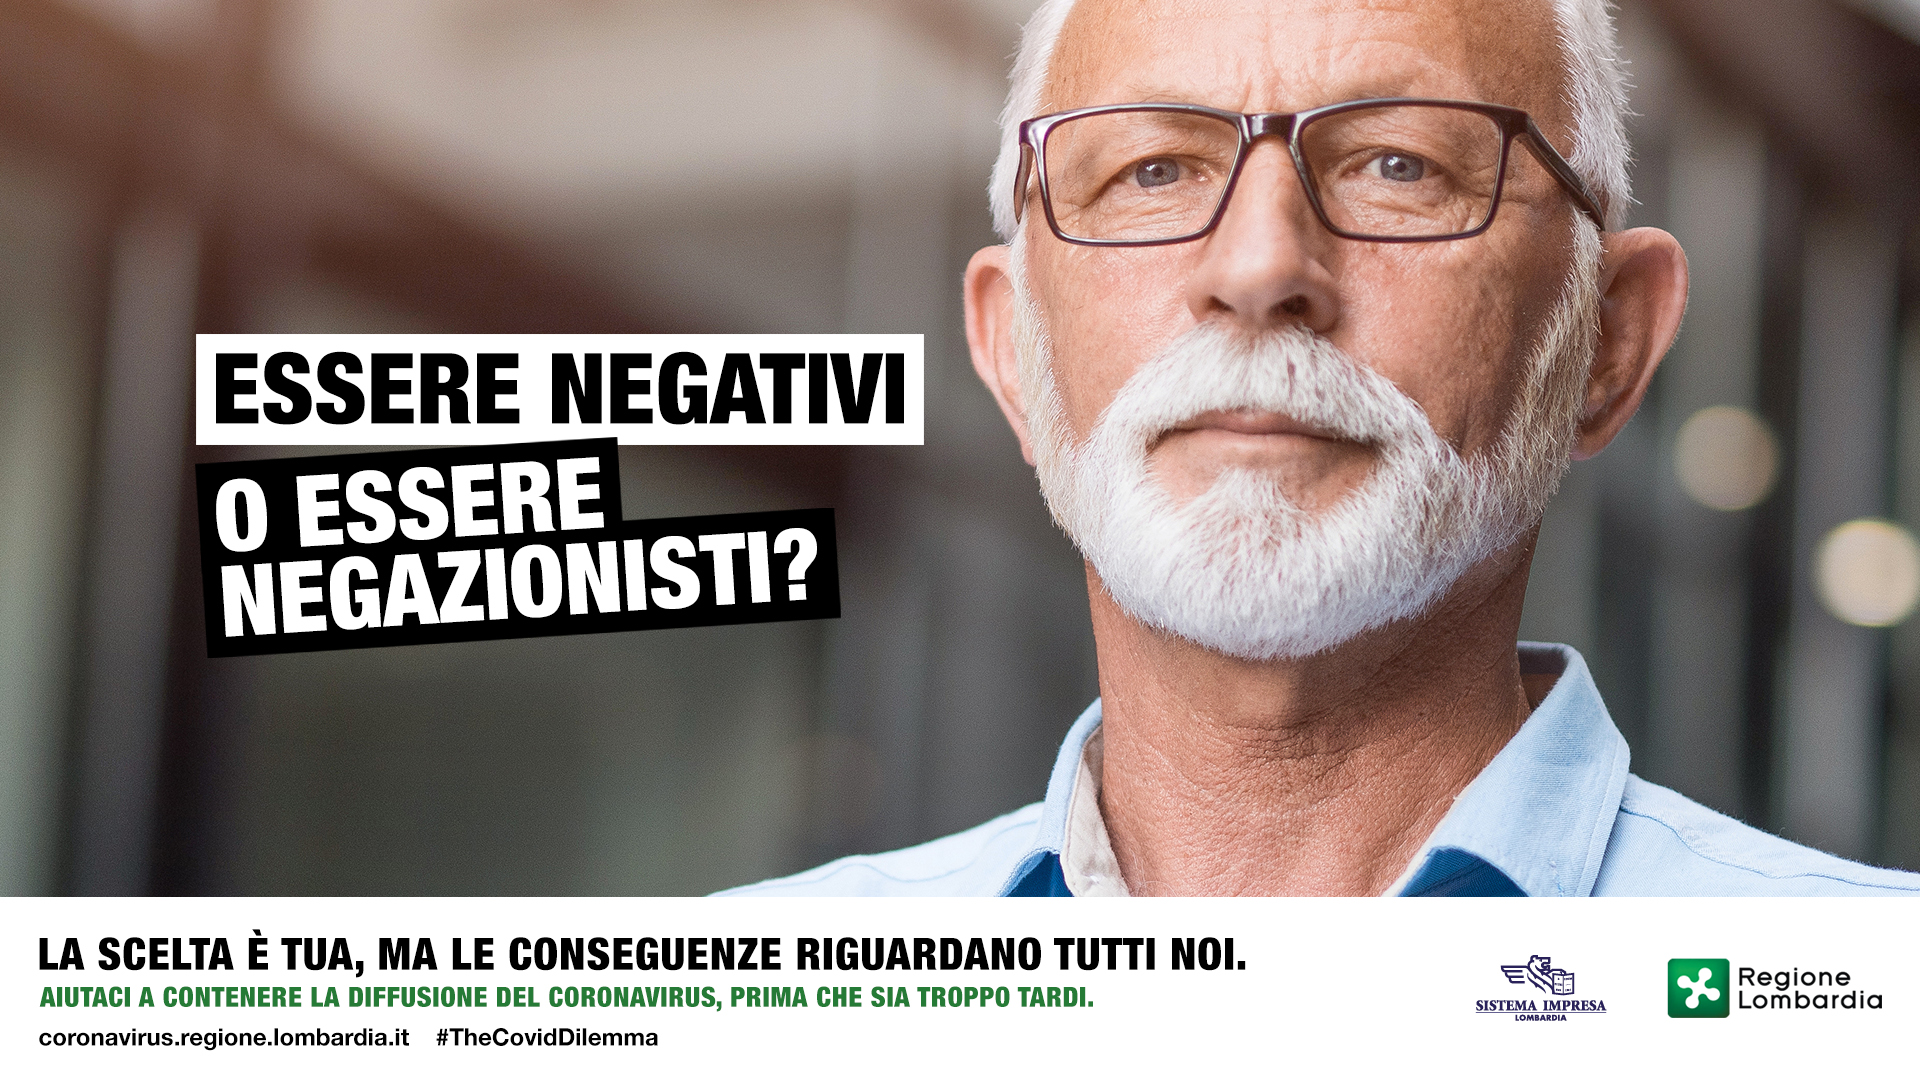 The Covid Dilemma, la campagna di Regione Lombardia per sensibilizzare il rispetto delle regole di prevenzione dal contagio